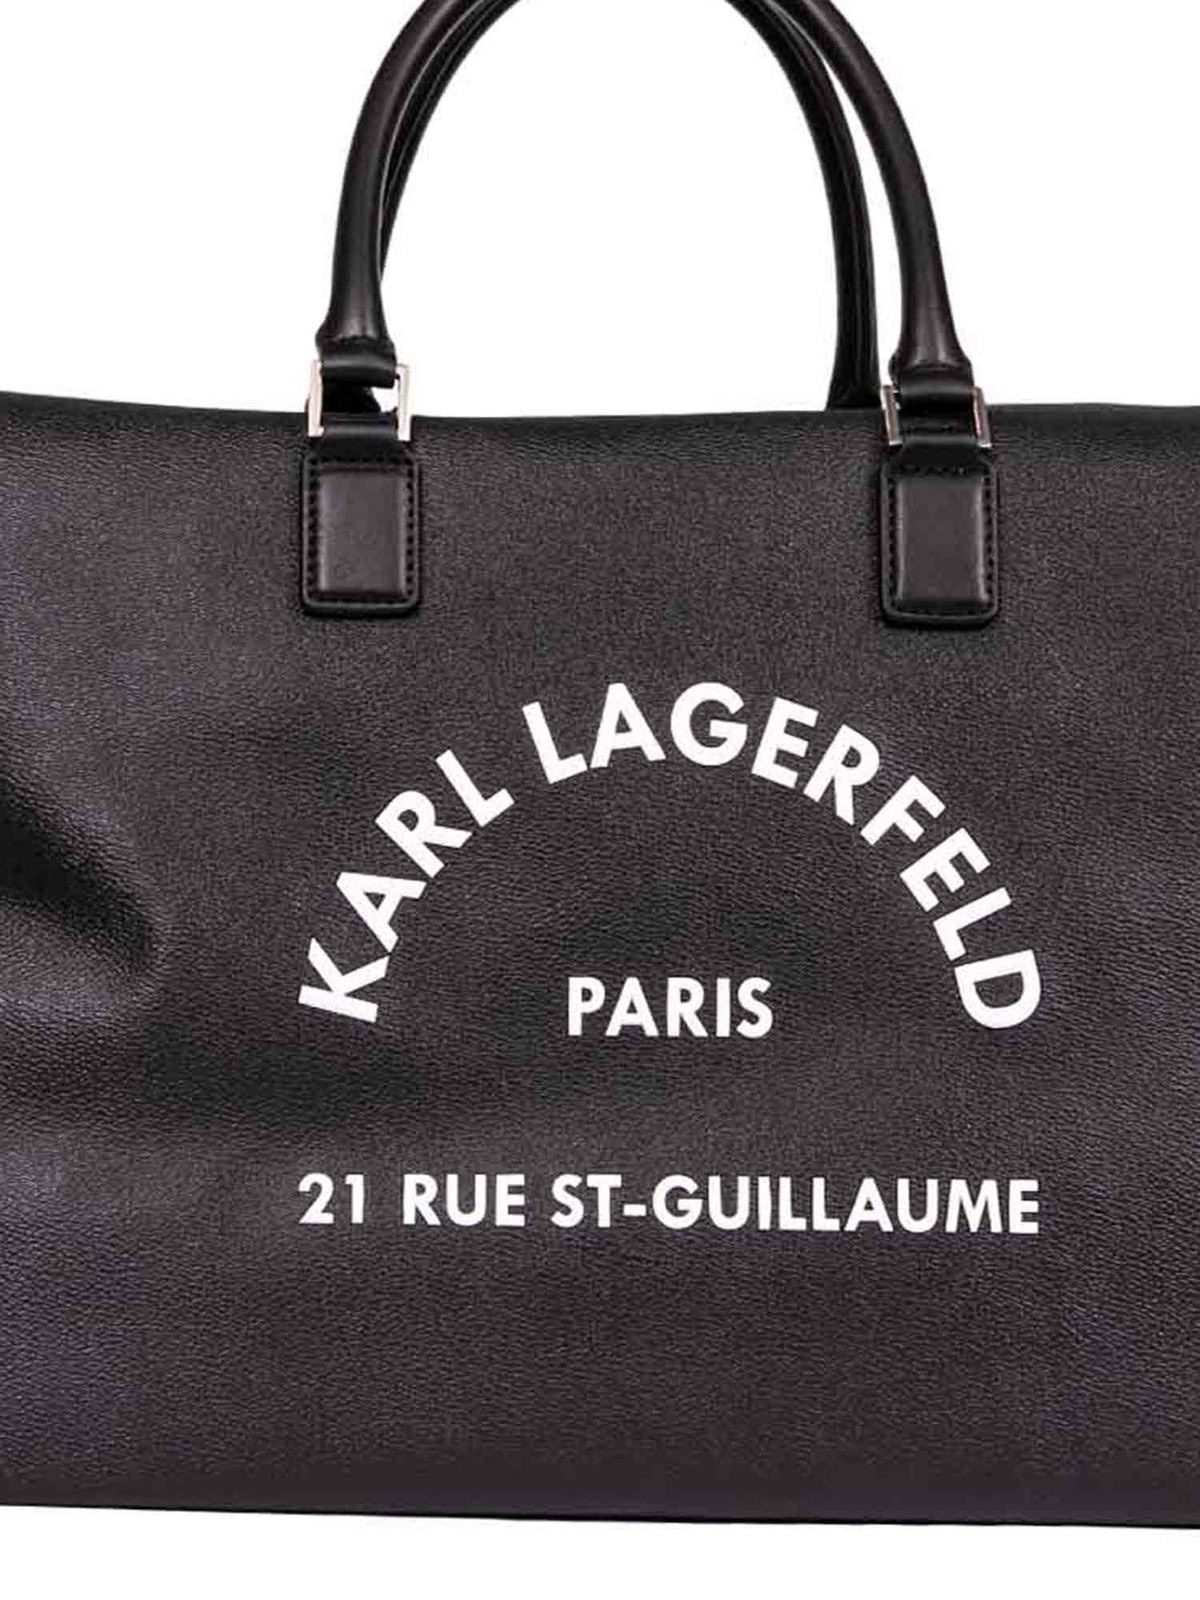 Karl Lagerfeld Paris Voyage Tote